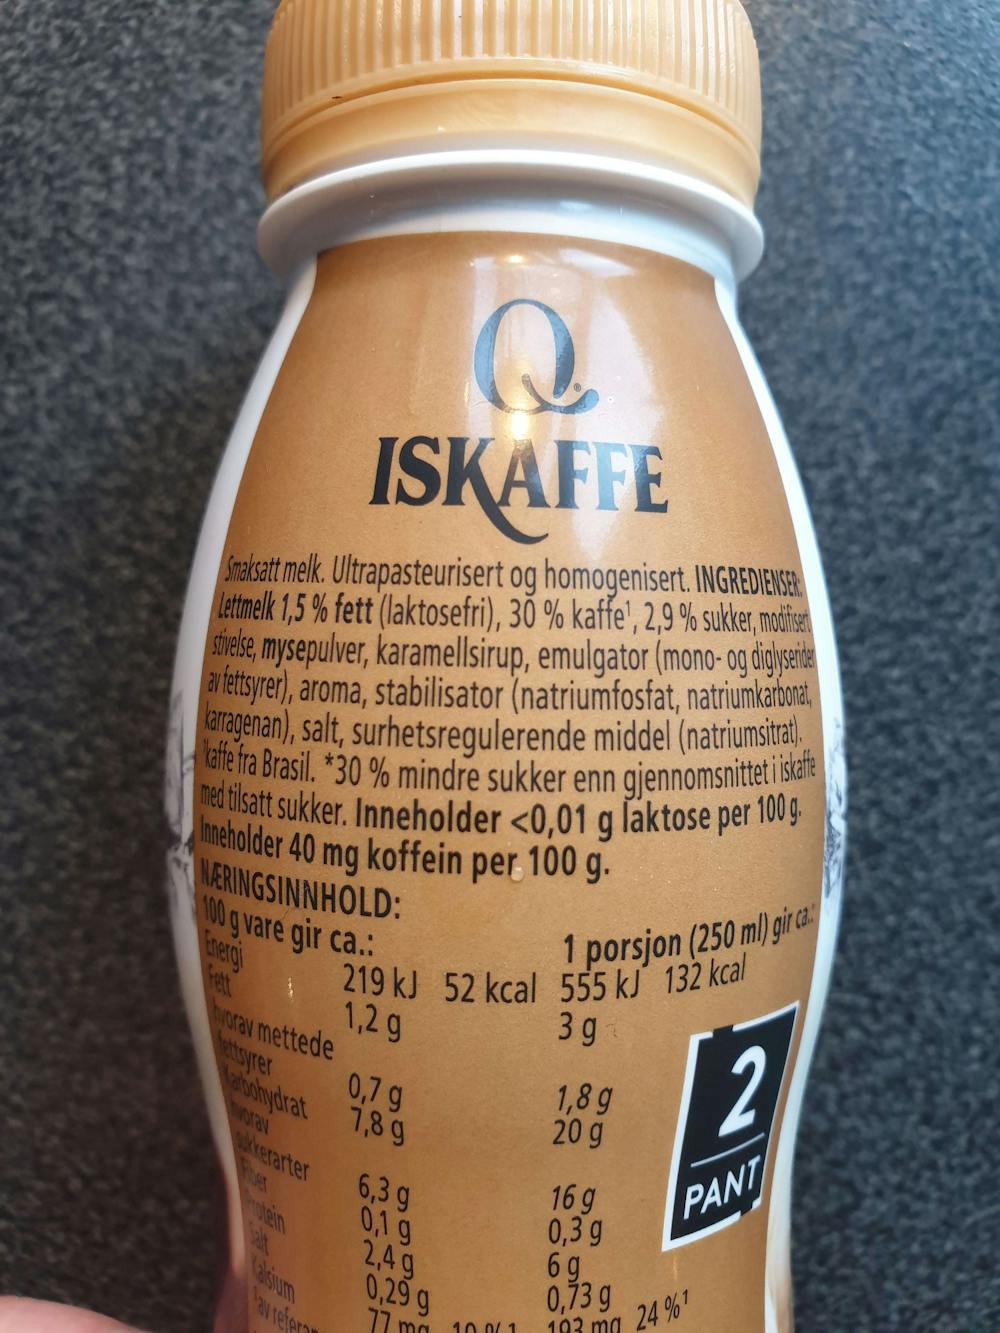 Ingredienslisten til Q-meieriene Iskaffe salted caramel